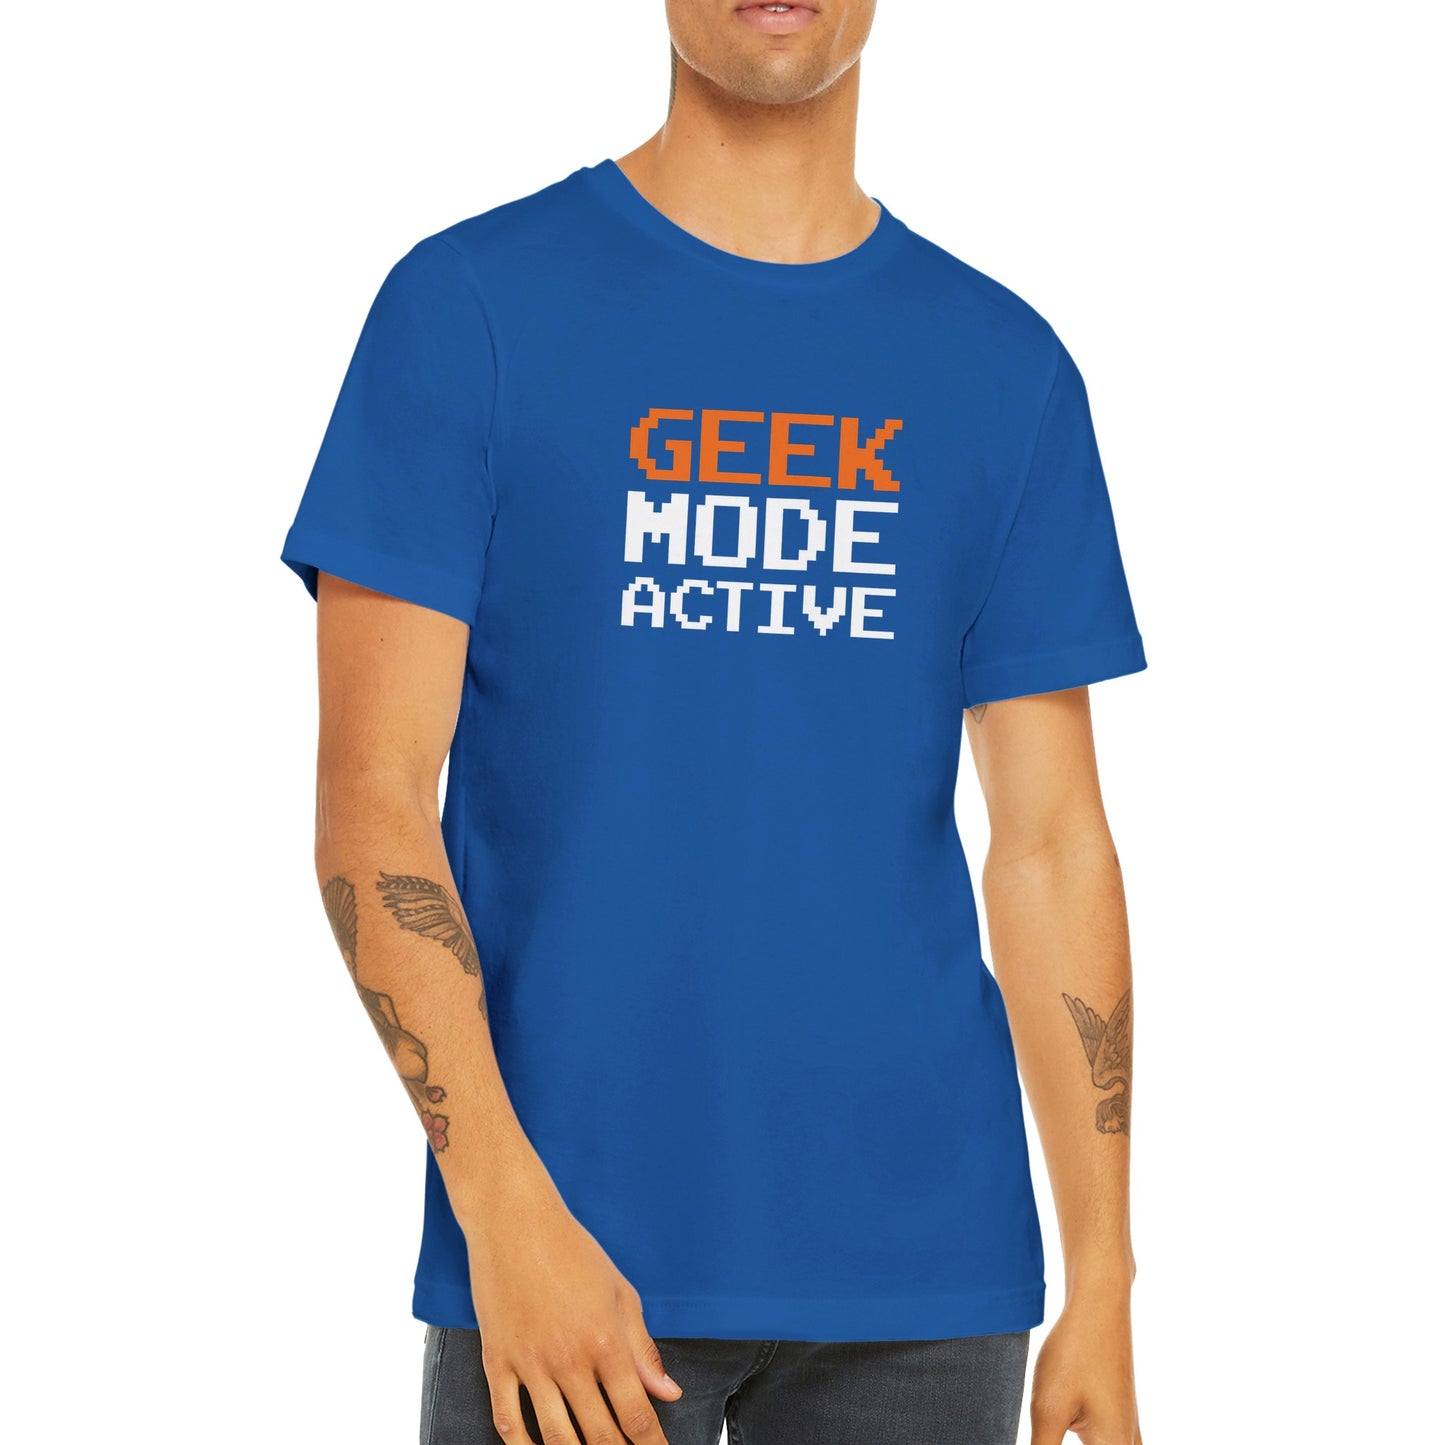 Geek mode active T-shirt